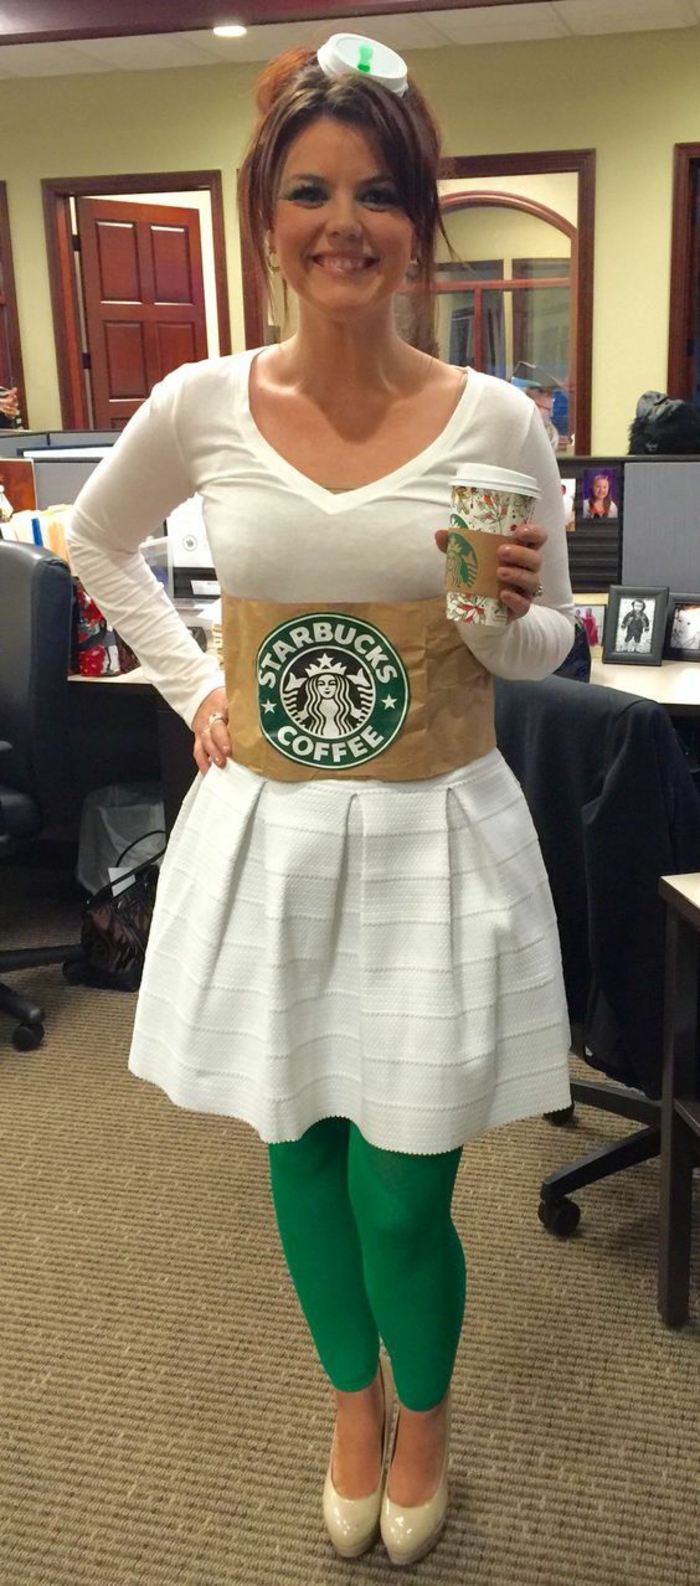 ein Starbucks Kostüm zum Selbermachen - wie ein Becher mit Logo